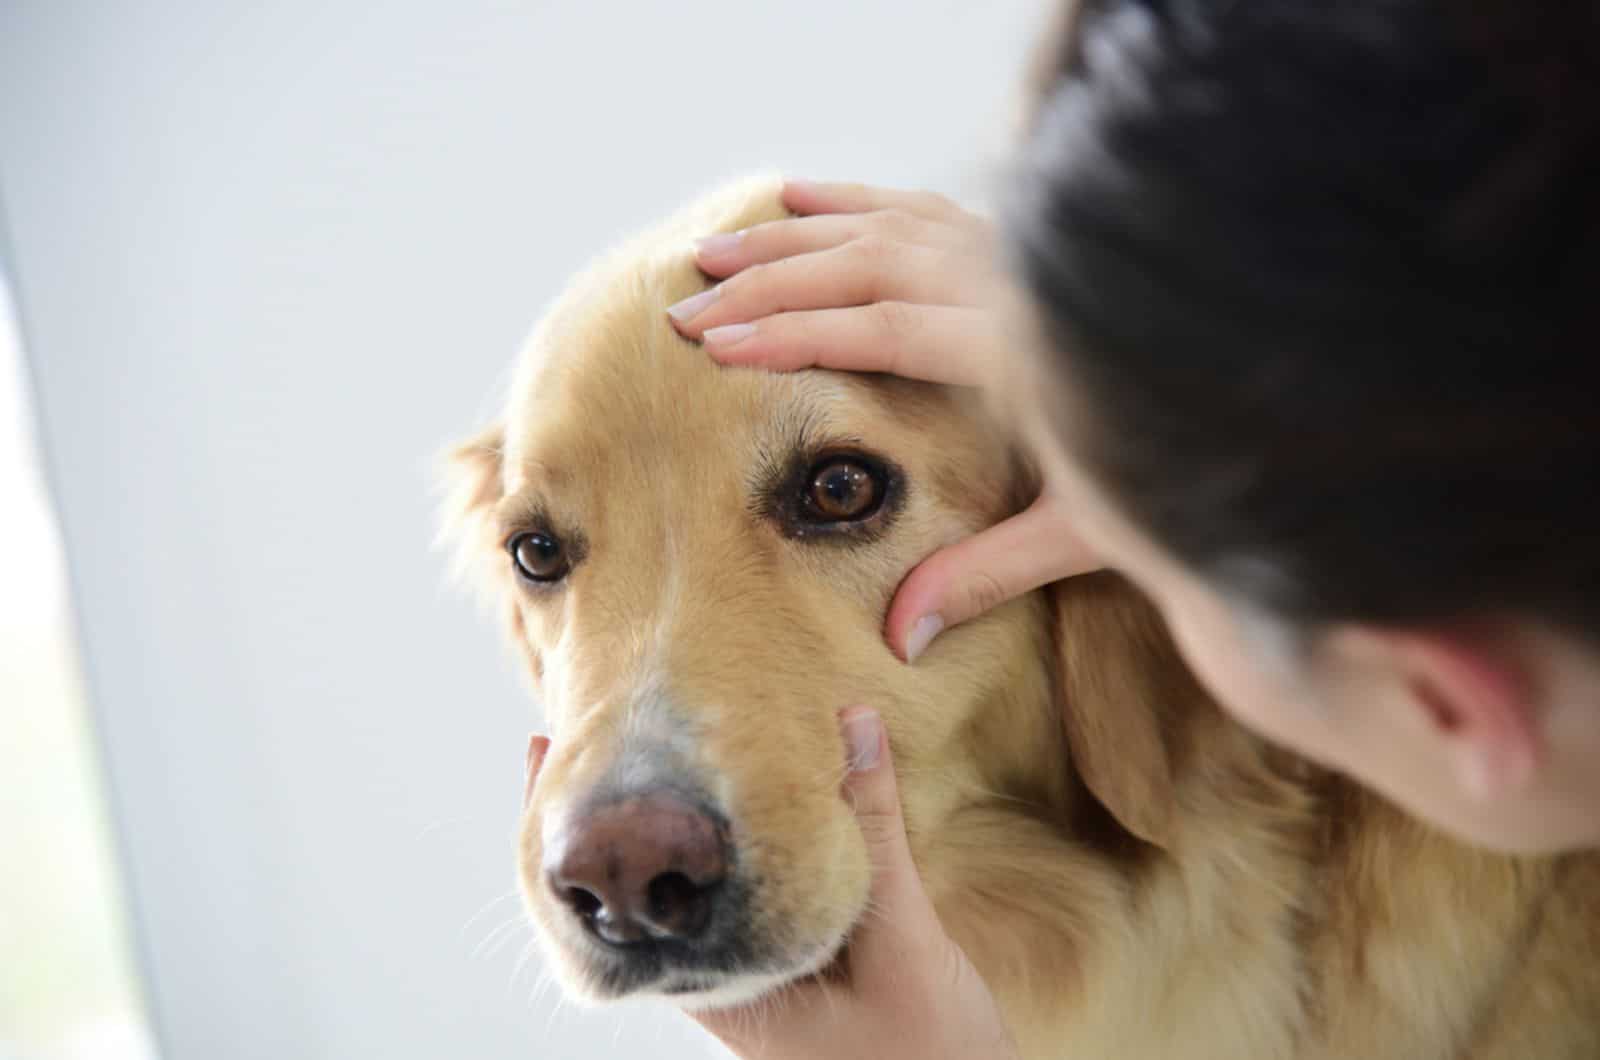 veterinarian checking dog's eye at clinic